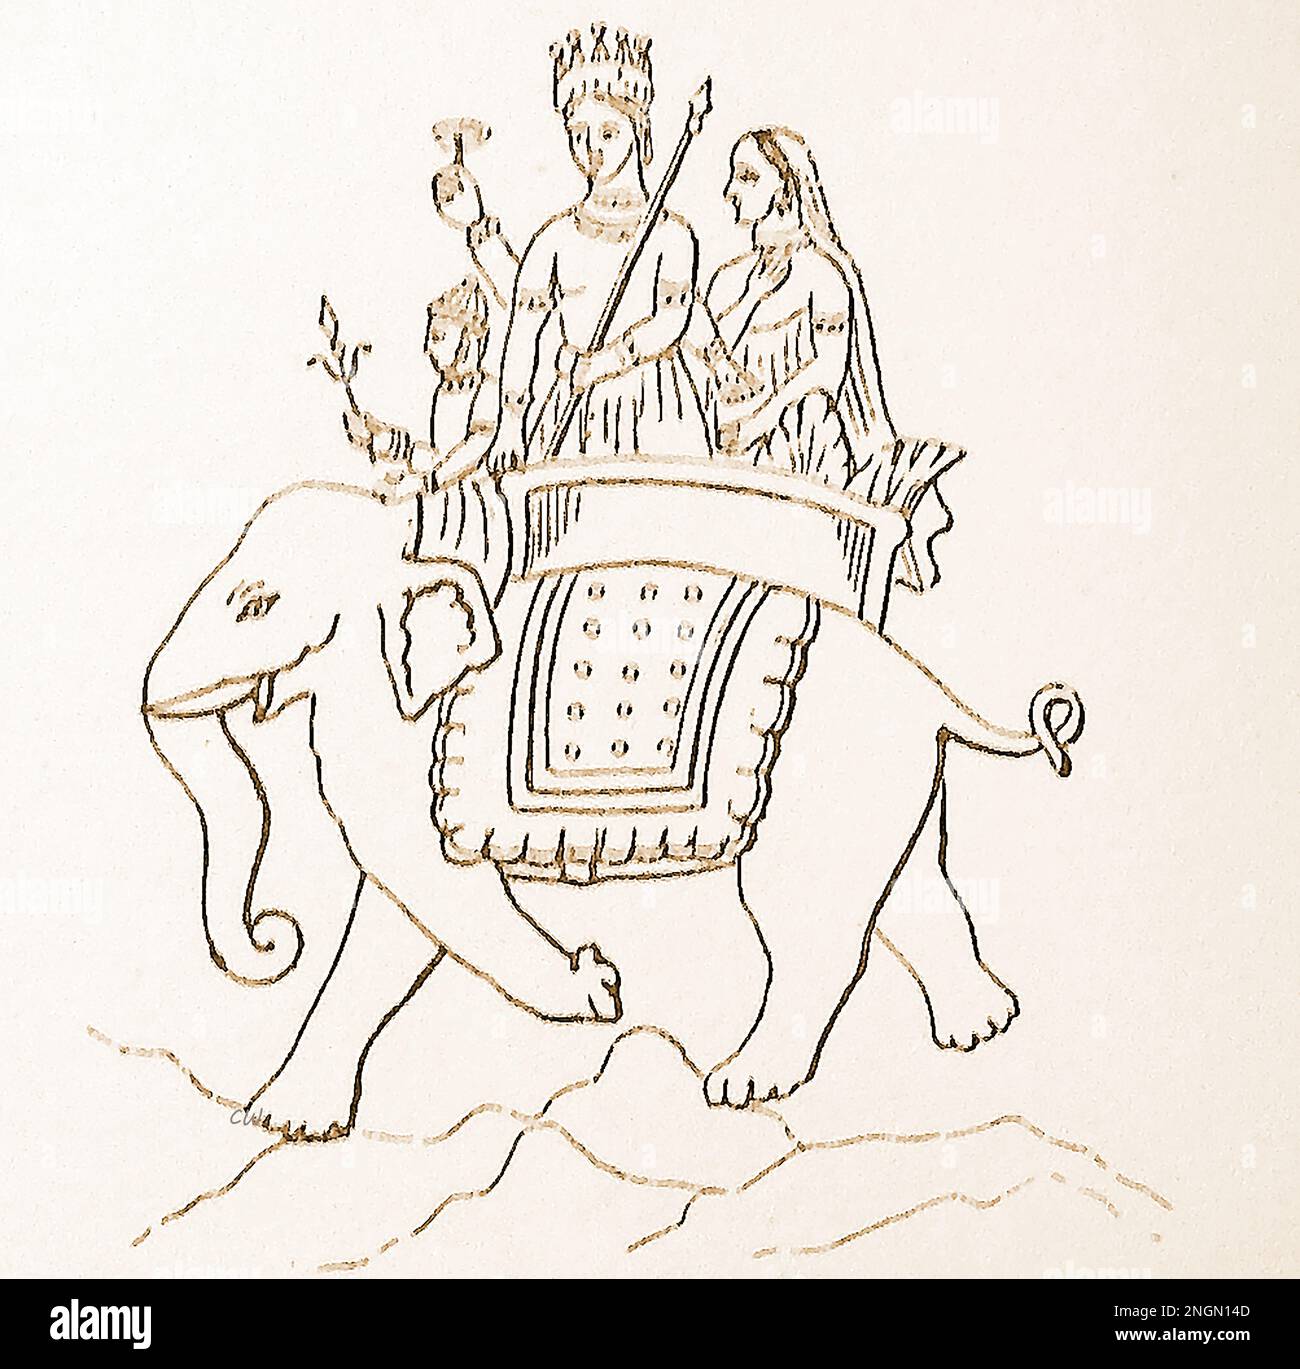 Ein Wörterbuch aus dem späten 19. Jahrhundert zur vedischen hinduistischen Gottheit INDRA ( इन्द्र), die auf einem Elefanten reitet. Er gilt als der König der Devas und König von Svarga (Himmel), auch Gott des Blitzes, des Donners, der Stürme und des Regens. - 19 वीं शताब्दी के उत्तरार्ध में वैदिक हिंदू देवता, इंद्र, (इन्द्र) का एक शब्दकोश चित्रण एक हाथी की सवारी करता है। उन्हें देवों के राजा और स्वर्ग (स्वर्ग) के राजा के रूप में माना जाता है, साथ ही बिजली, गरज, तूफान और बारिश के देवता भी Stockfoto